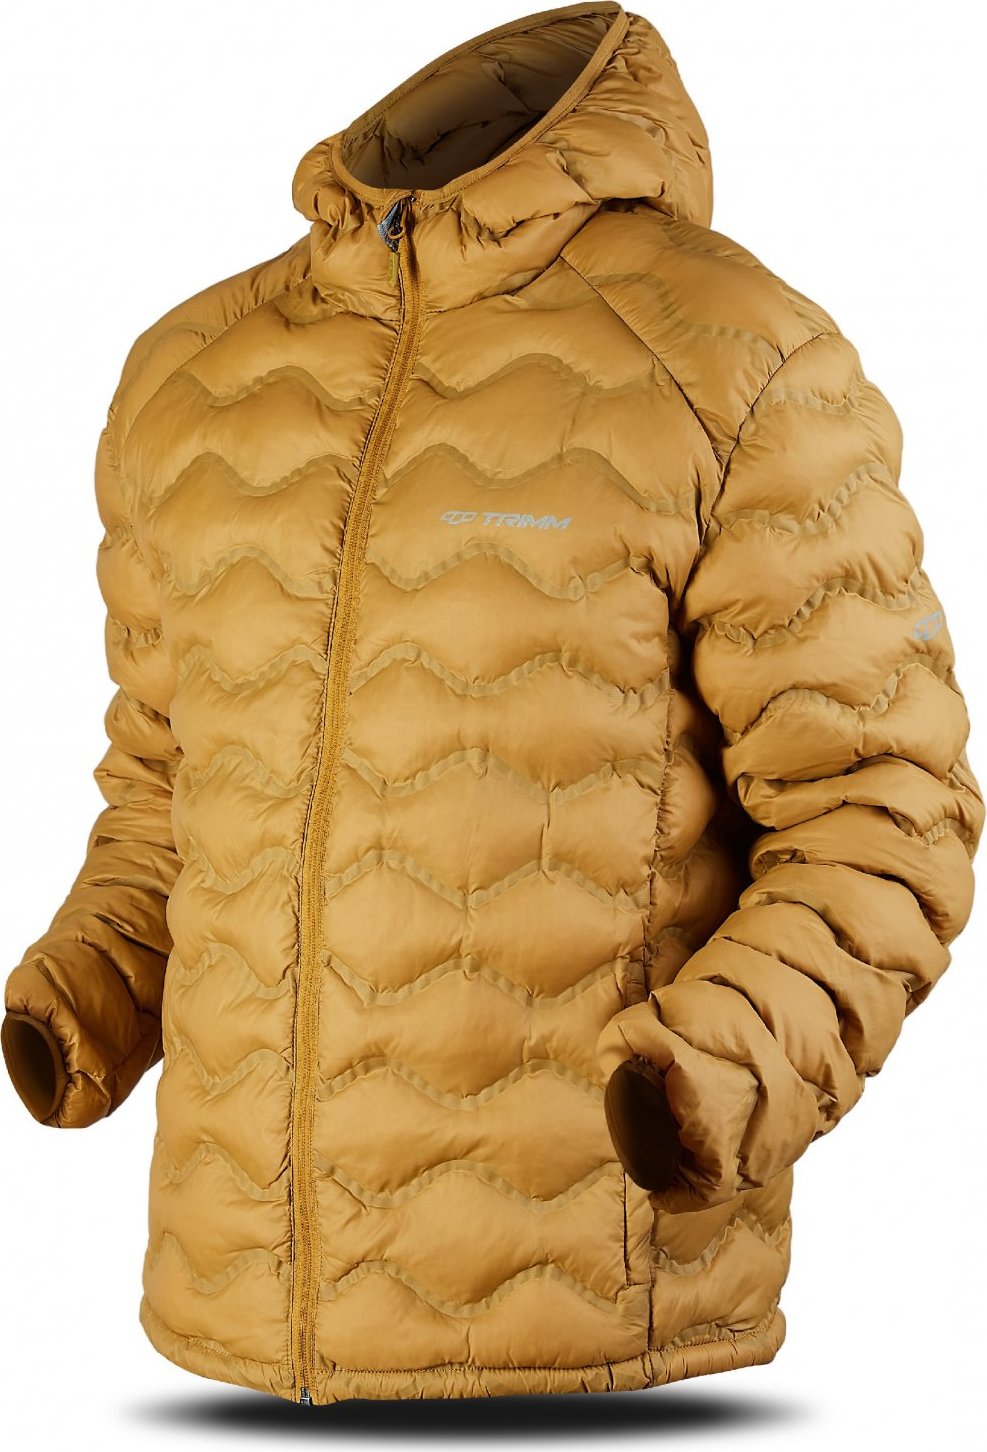 Pánská zimní bunda TRIMM Trock zlatá Velikost: 3XL, Barva: golden/ light grey